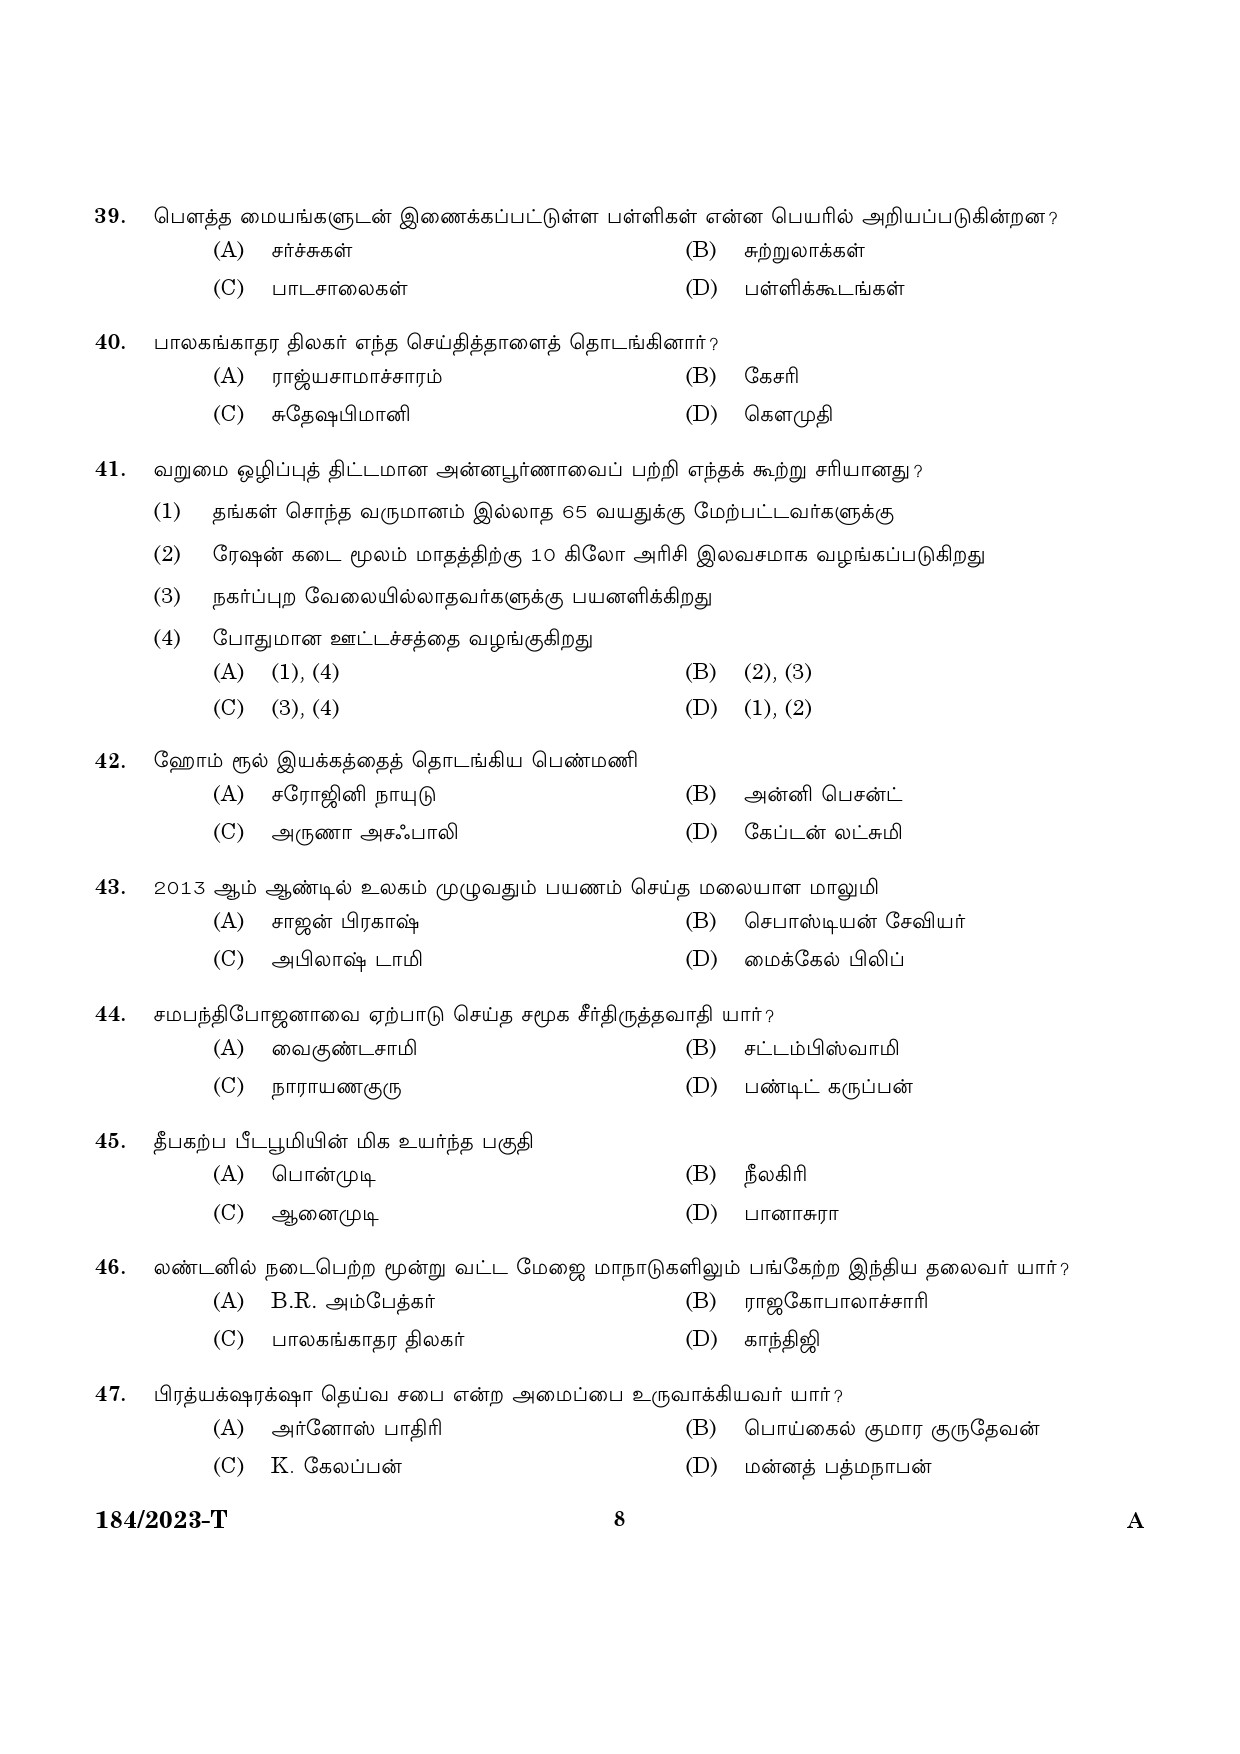 KPSC LGS Tamil Exam 2023 Code 1842023 T 6